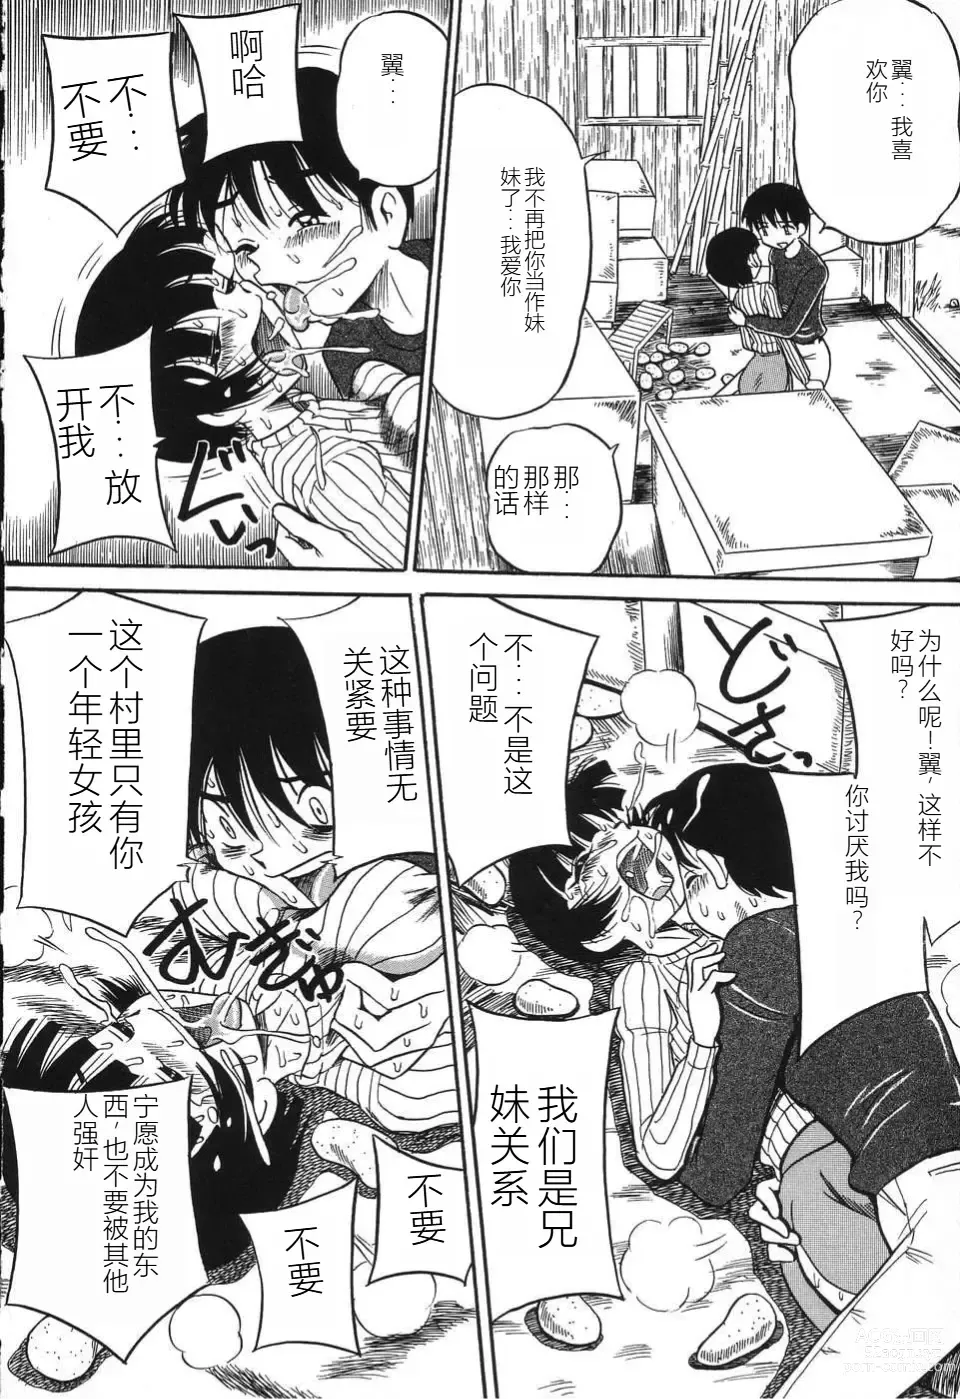 Page 154 of manga Imouto Bakunyuu Shibori